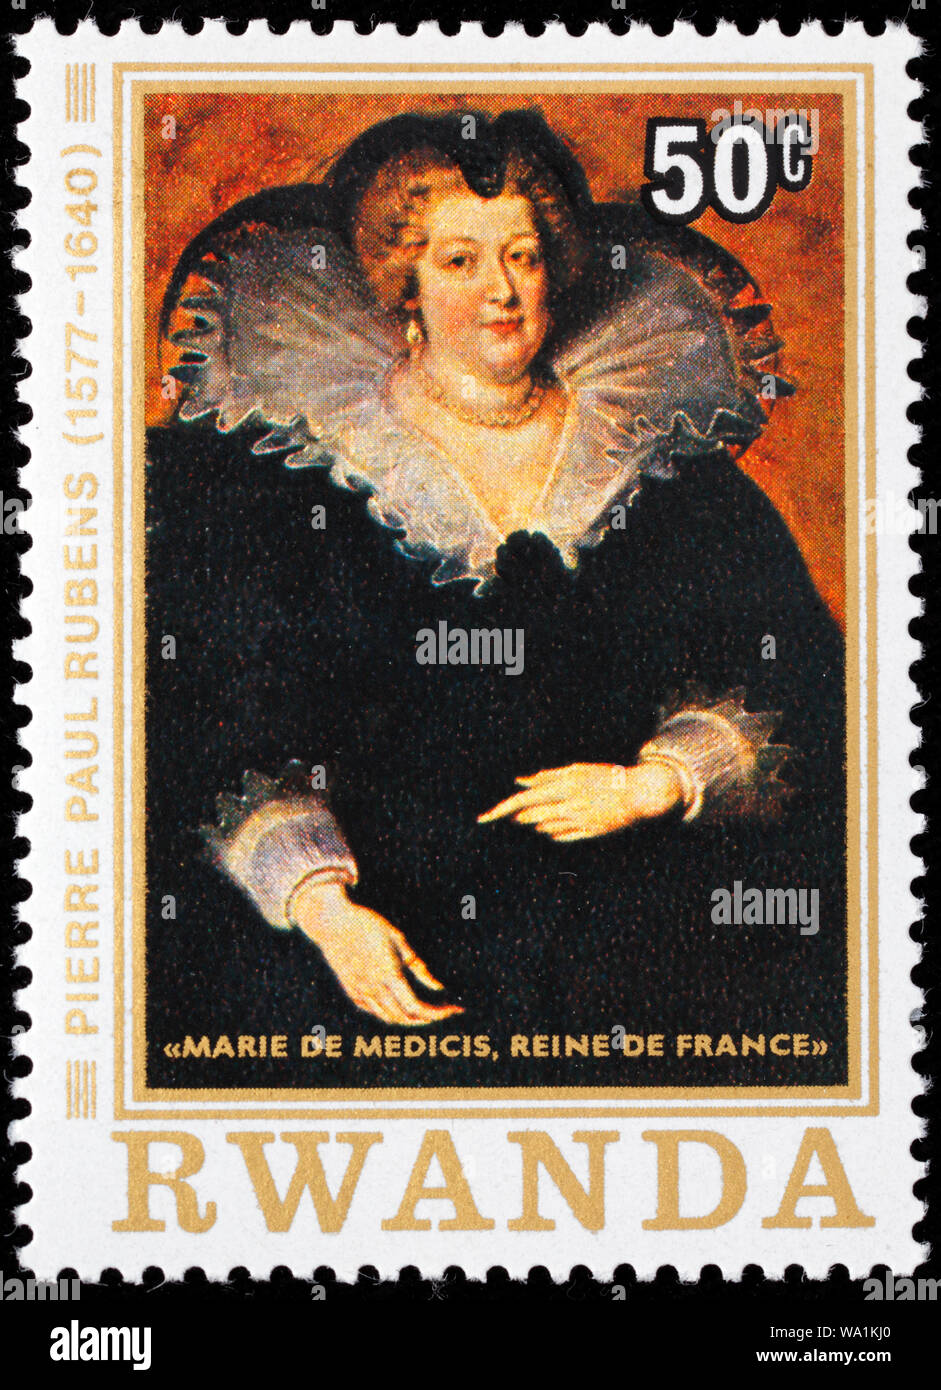 María de Médicis, Marie de Medicis (1575-1642), Reina de Francia, retrato de Peter Paul Rubens, sello, Rwanda, 1977 Foto de stock